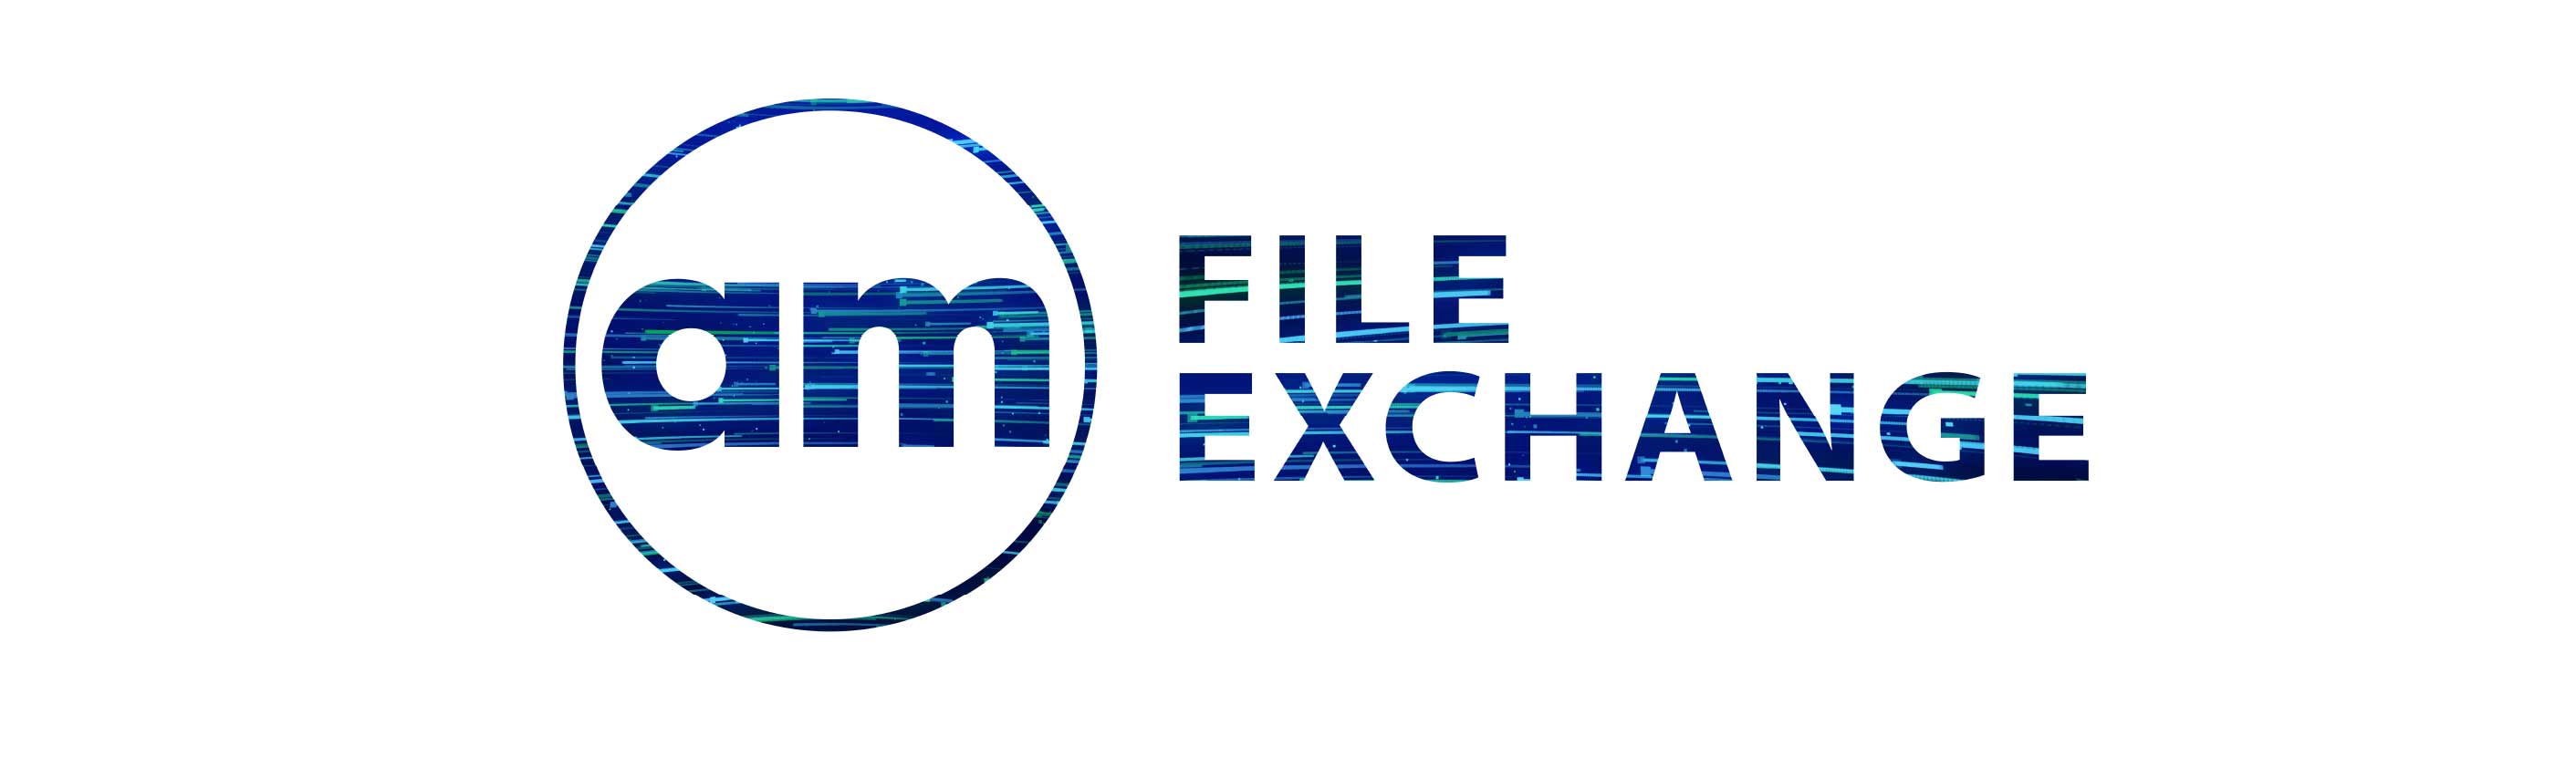 Branded File Exchange